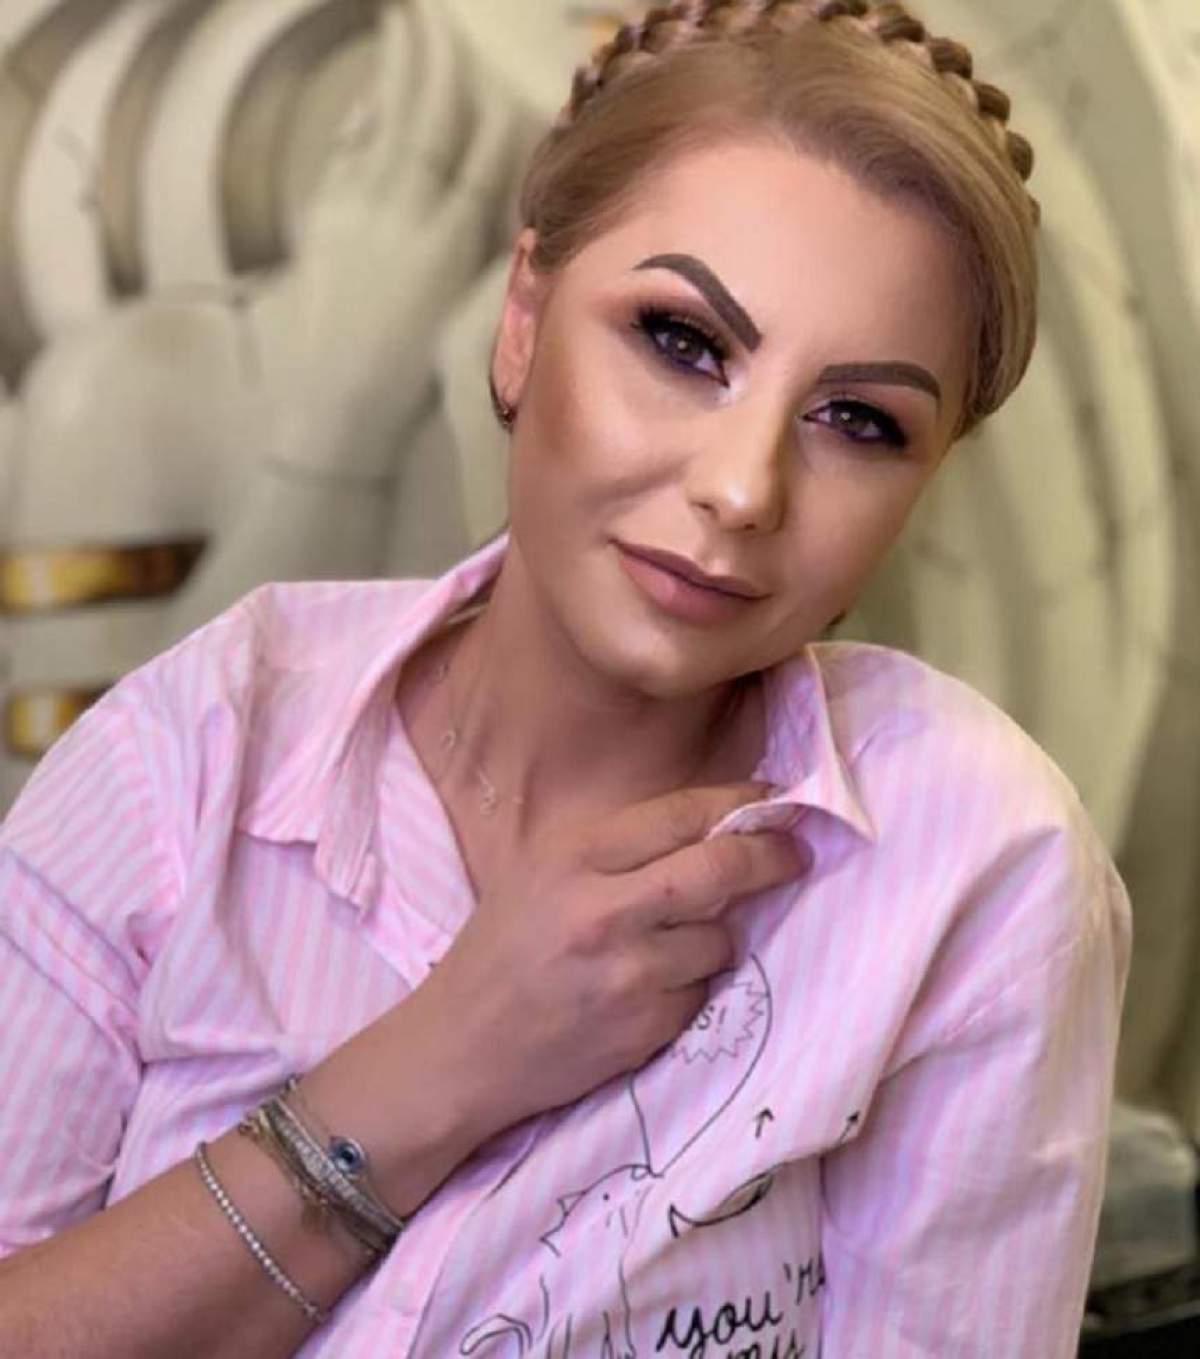 Emilia Ghinescu, declarații exclusive la Antena Stars despre meseria de psiholog. Cum se descurcă cântăreața: "Trebuie să ai două atuuri" / VIDEO